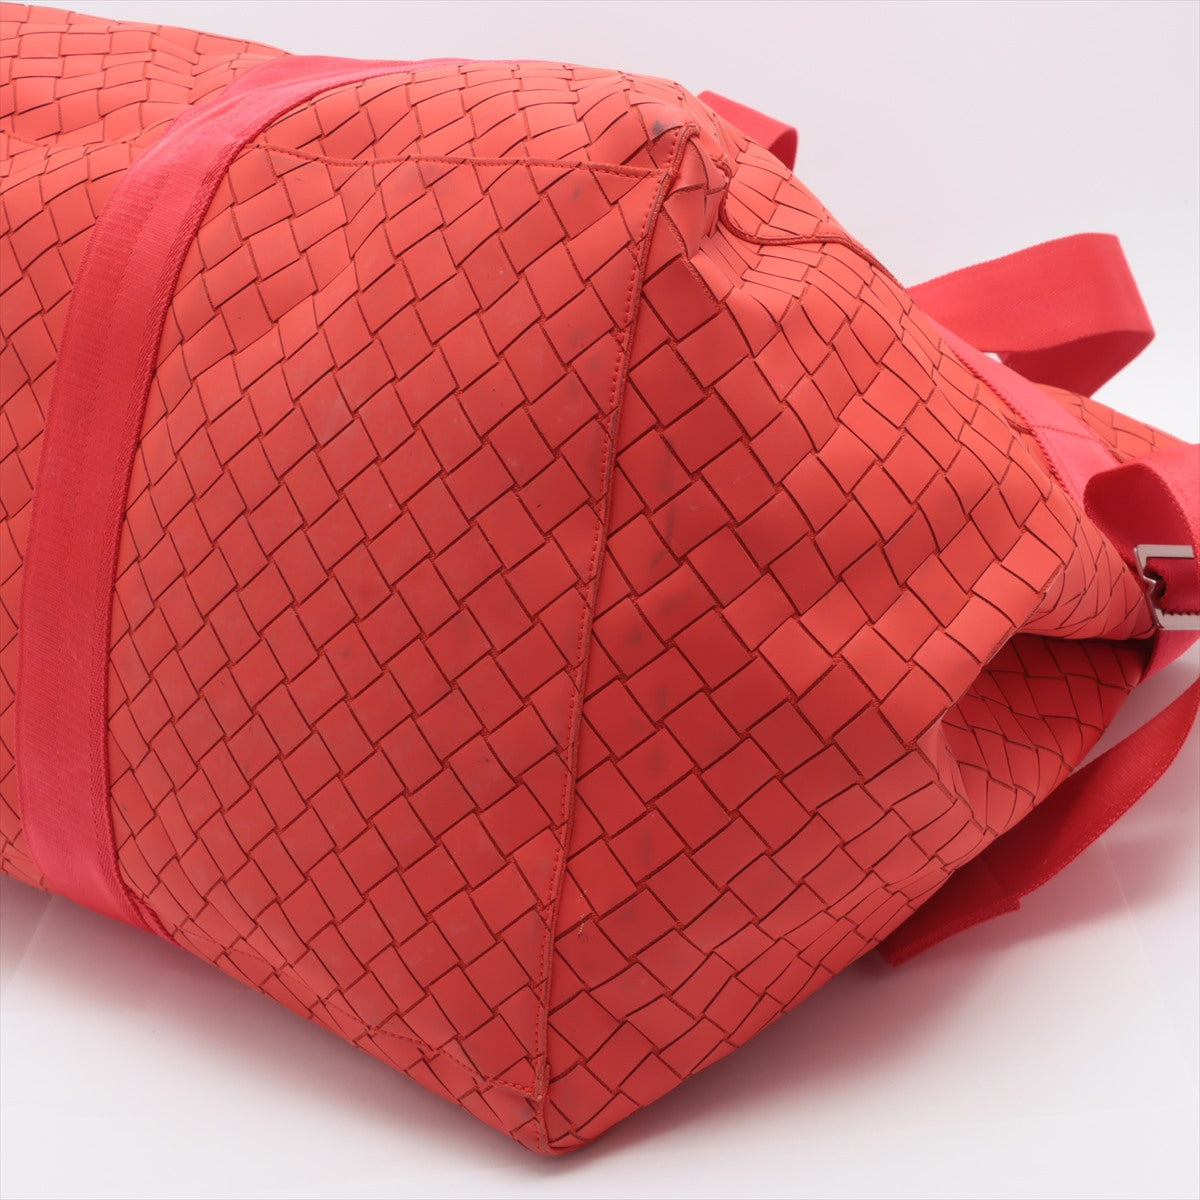 Bottega Veneta Intrecciato Nylon & leather Tote bag Red with pouch